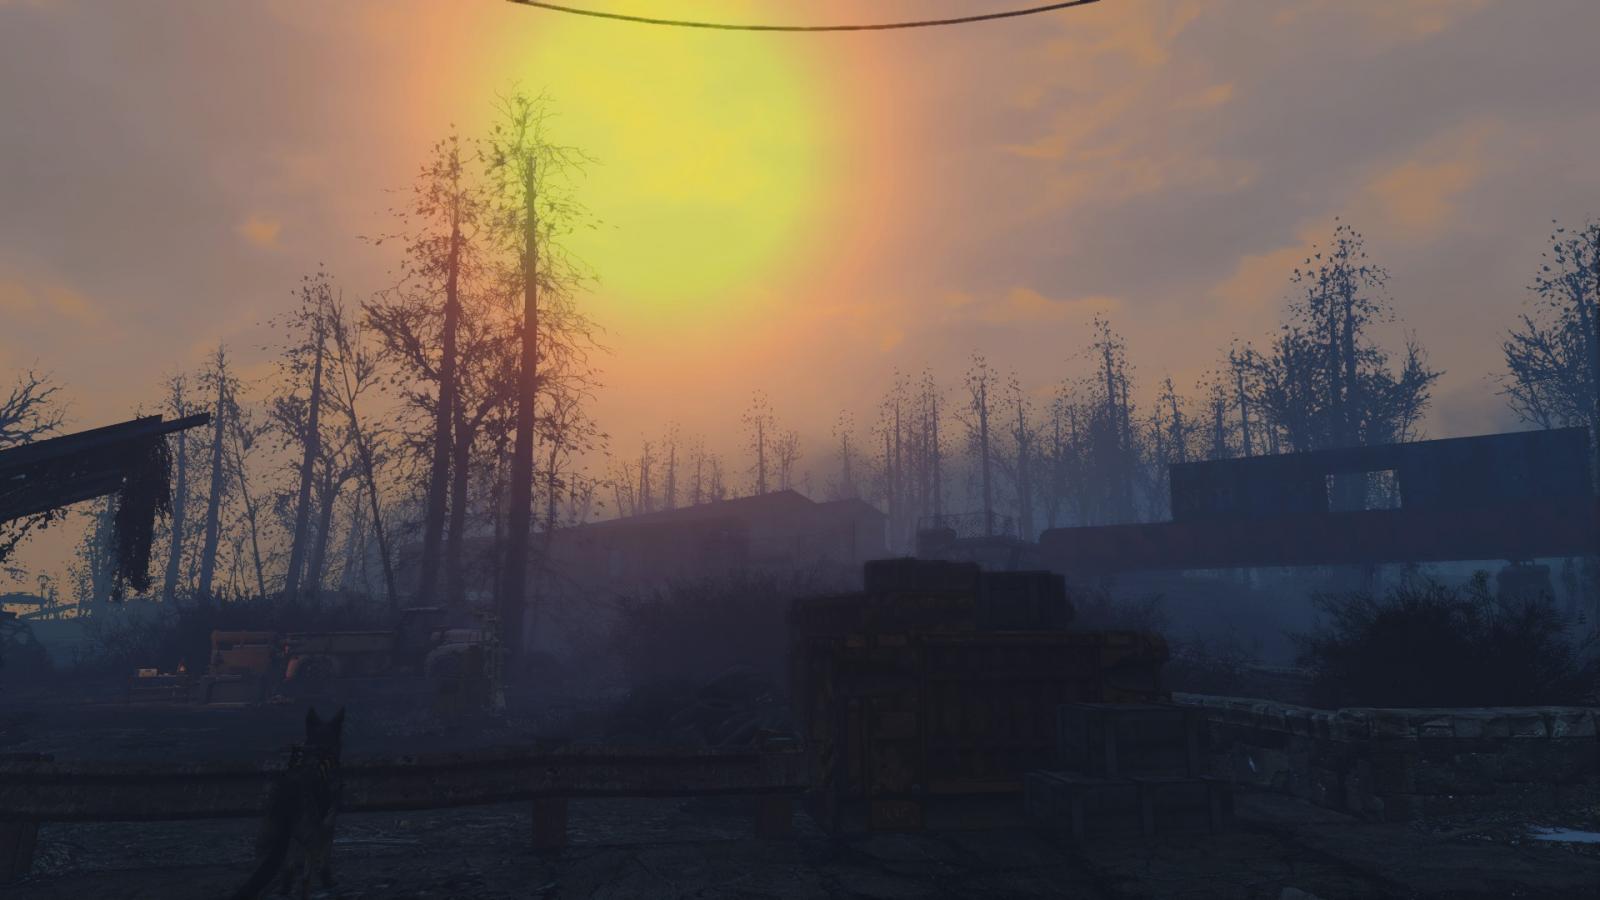 Sunrise over the Wasteland